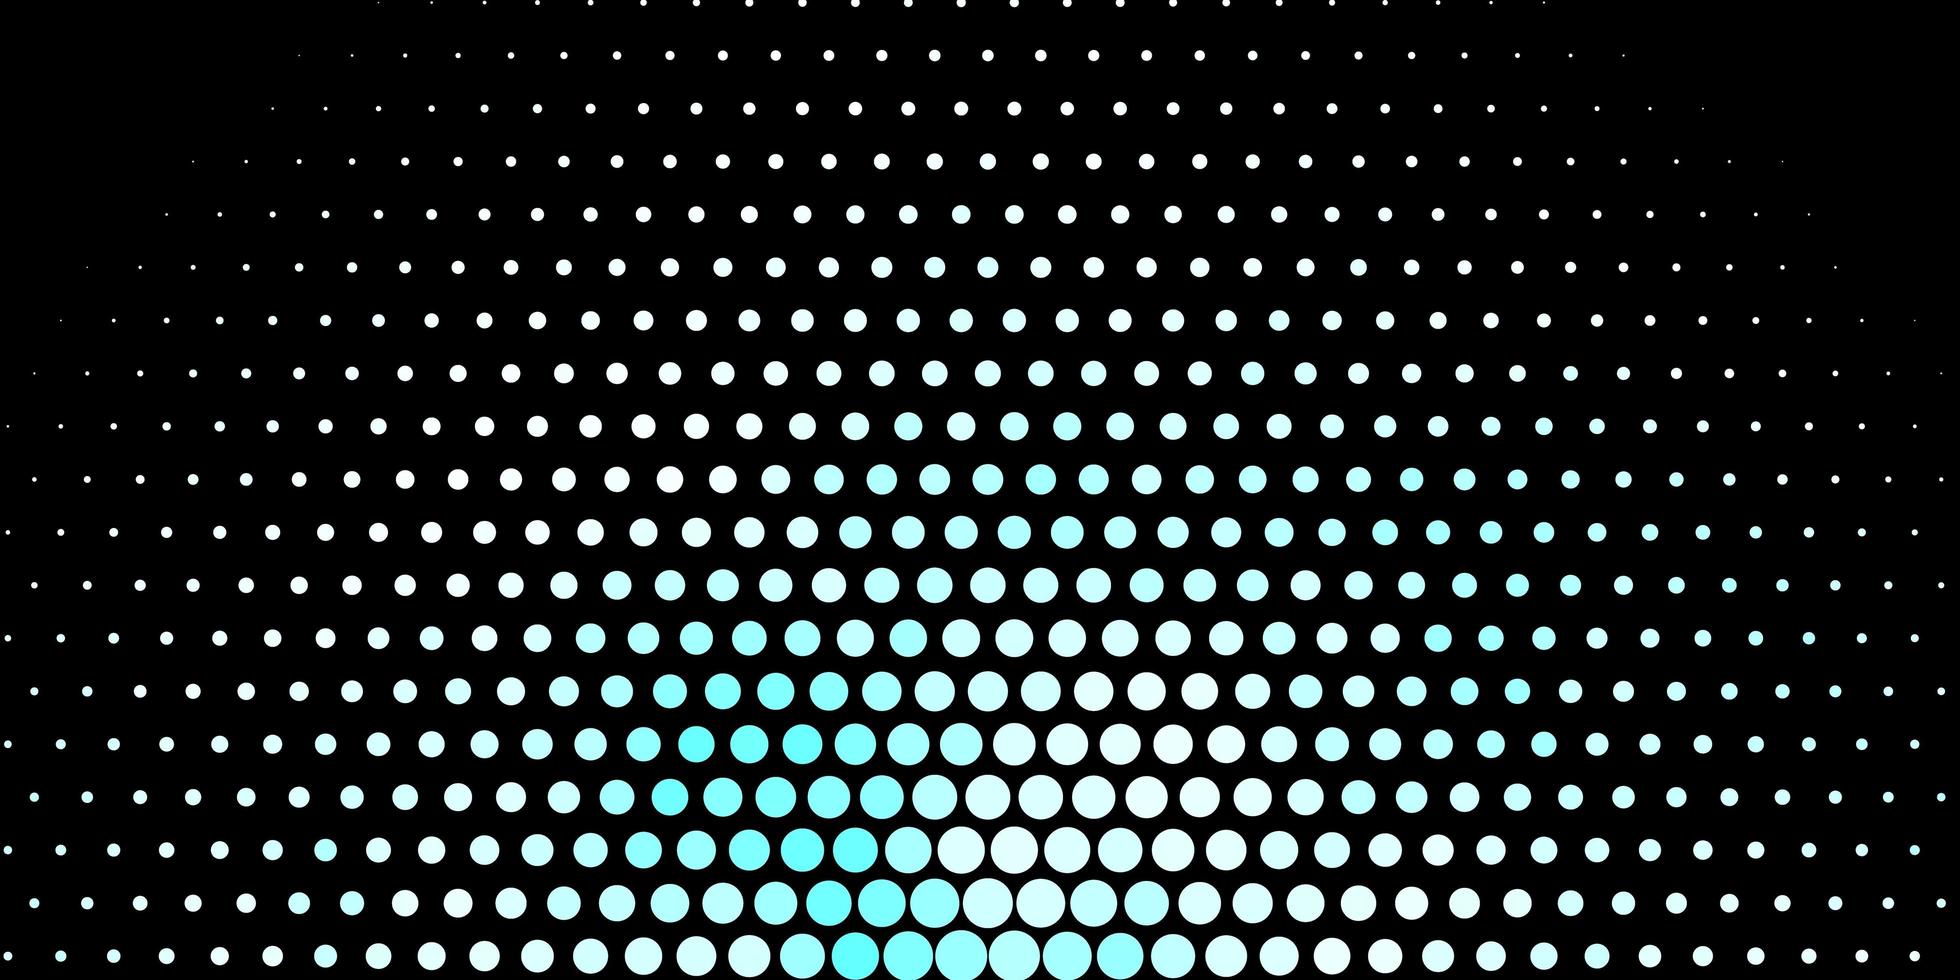 mörkblå vektorbakgrund med bubblor. abstrakta färgglada skivor på enkel lutningsbakgrund. design för affischer, banderoller. vektor